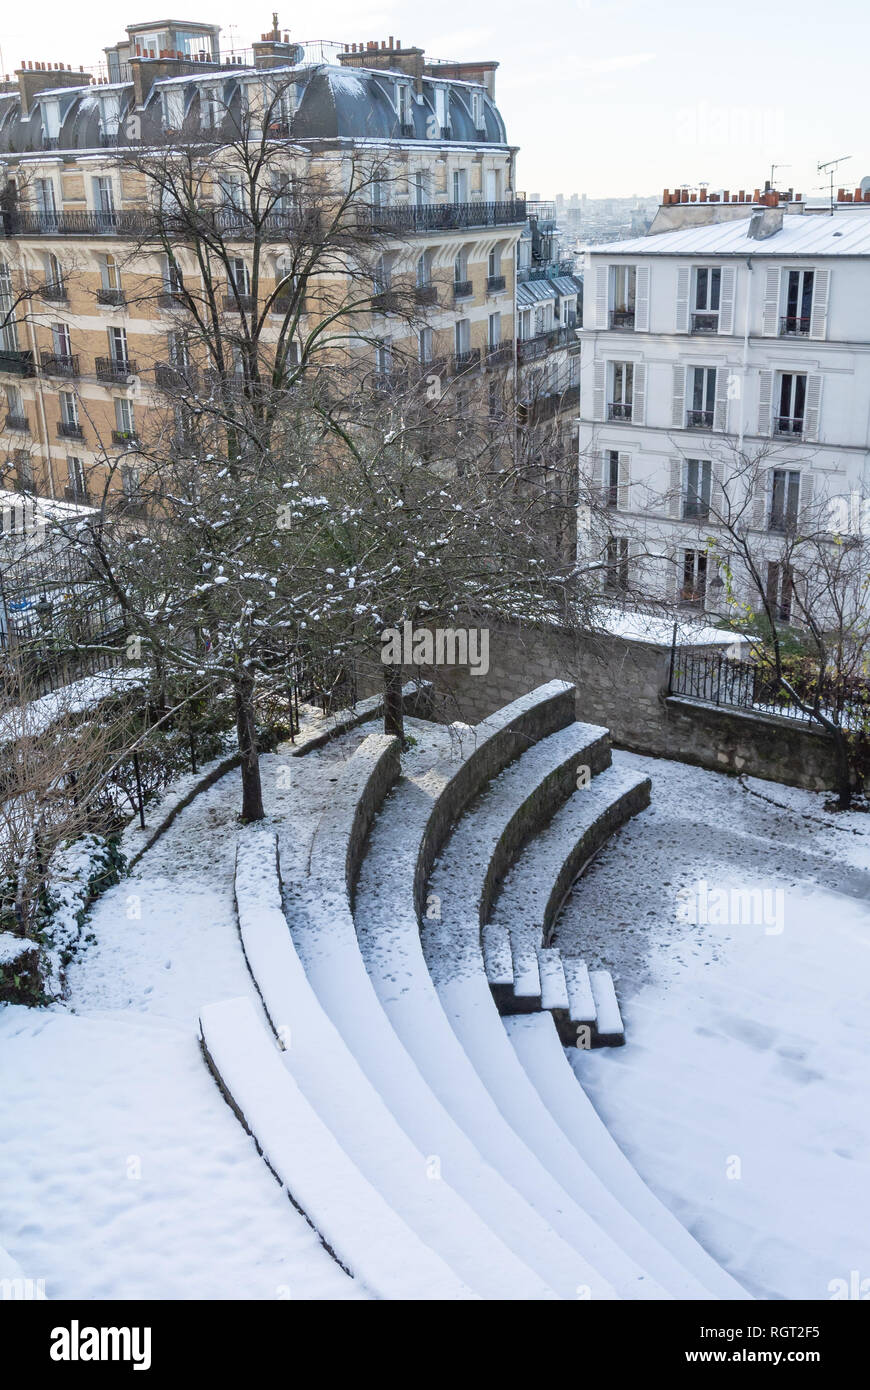 Arènes de Montmartre in Montmartre under snow, Paris, France Stock Photo